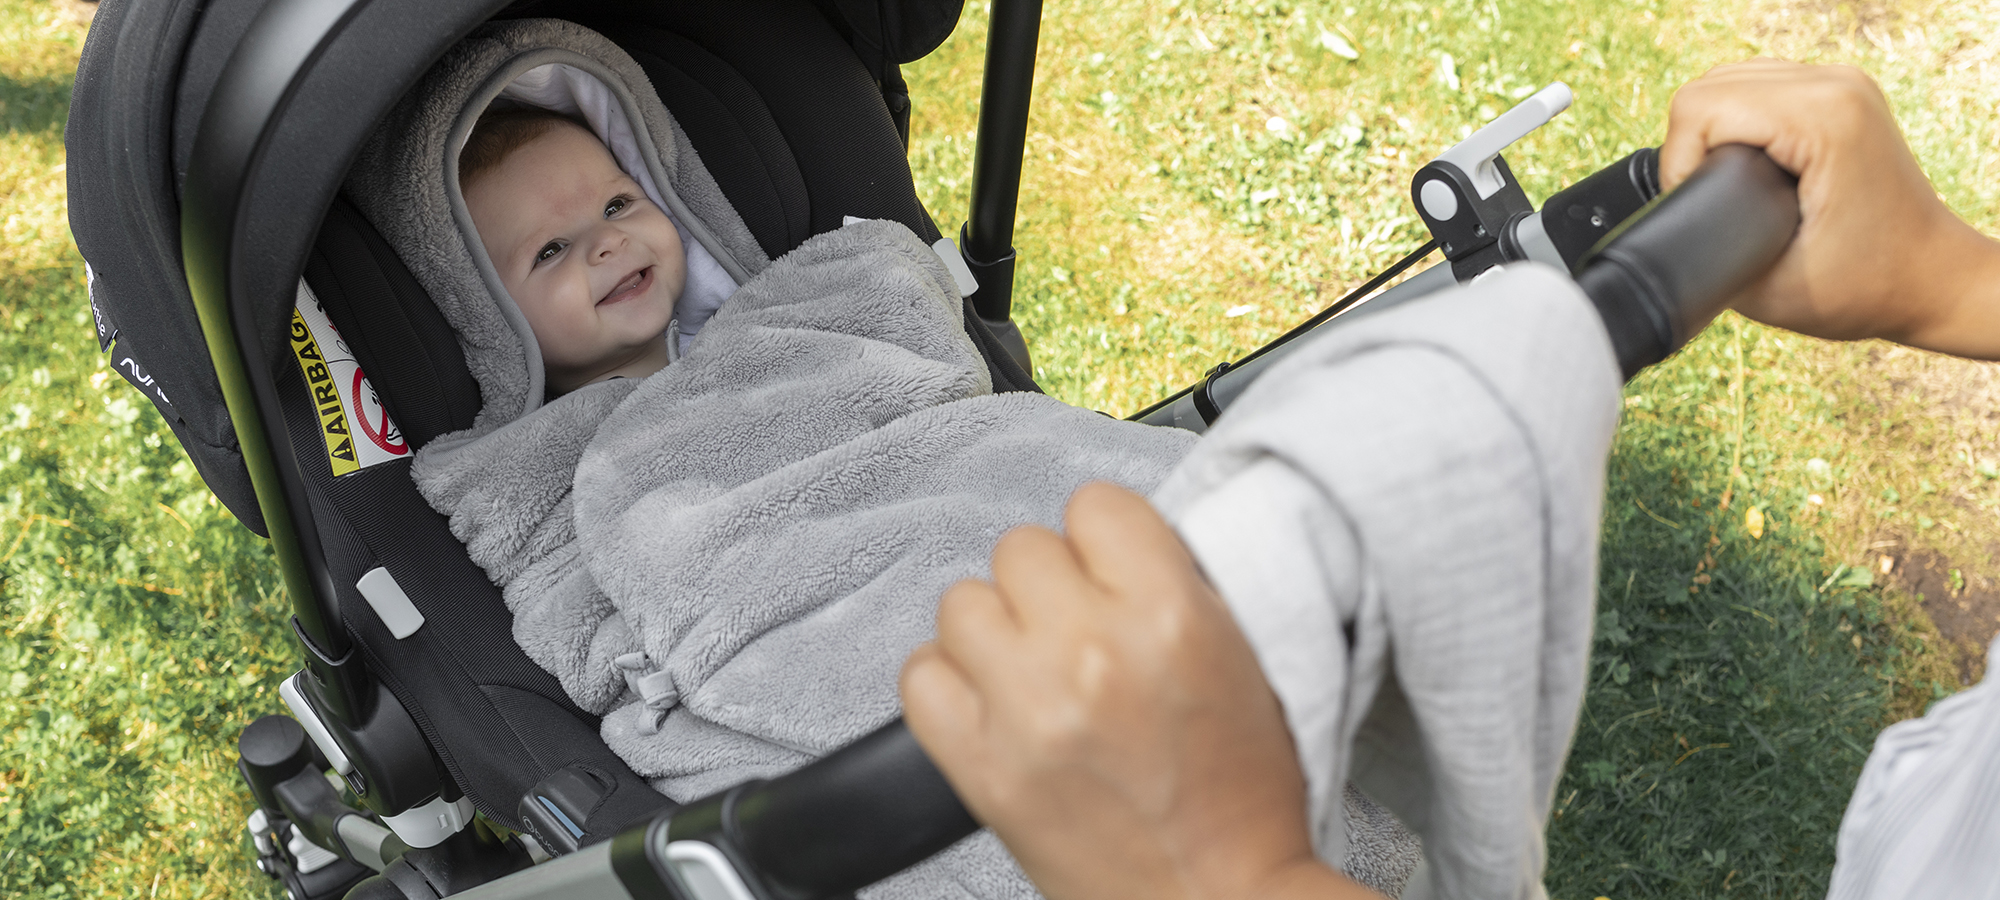 advies engel nest voetenzak veiligheid ballad zitje reizen baby deken essentiele tog warm koud geboorte praktisch aanbevolen ideaal belgisch merk oekotex essentiële moederschap lijst | BEMINI